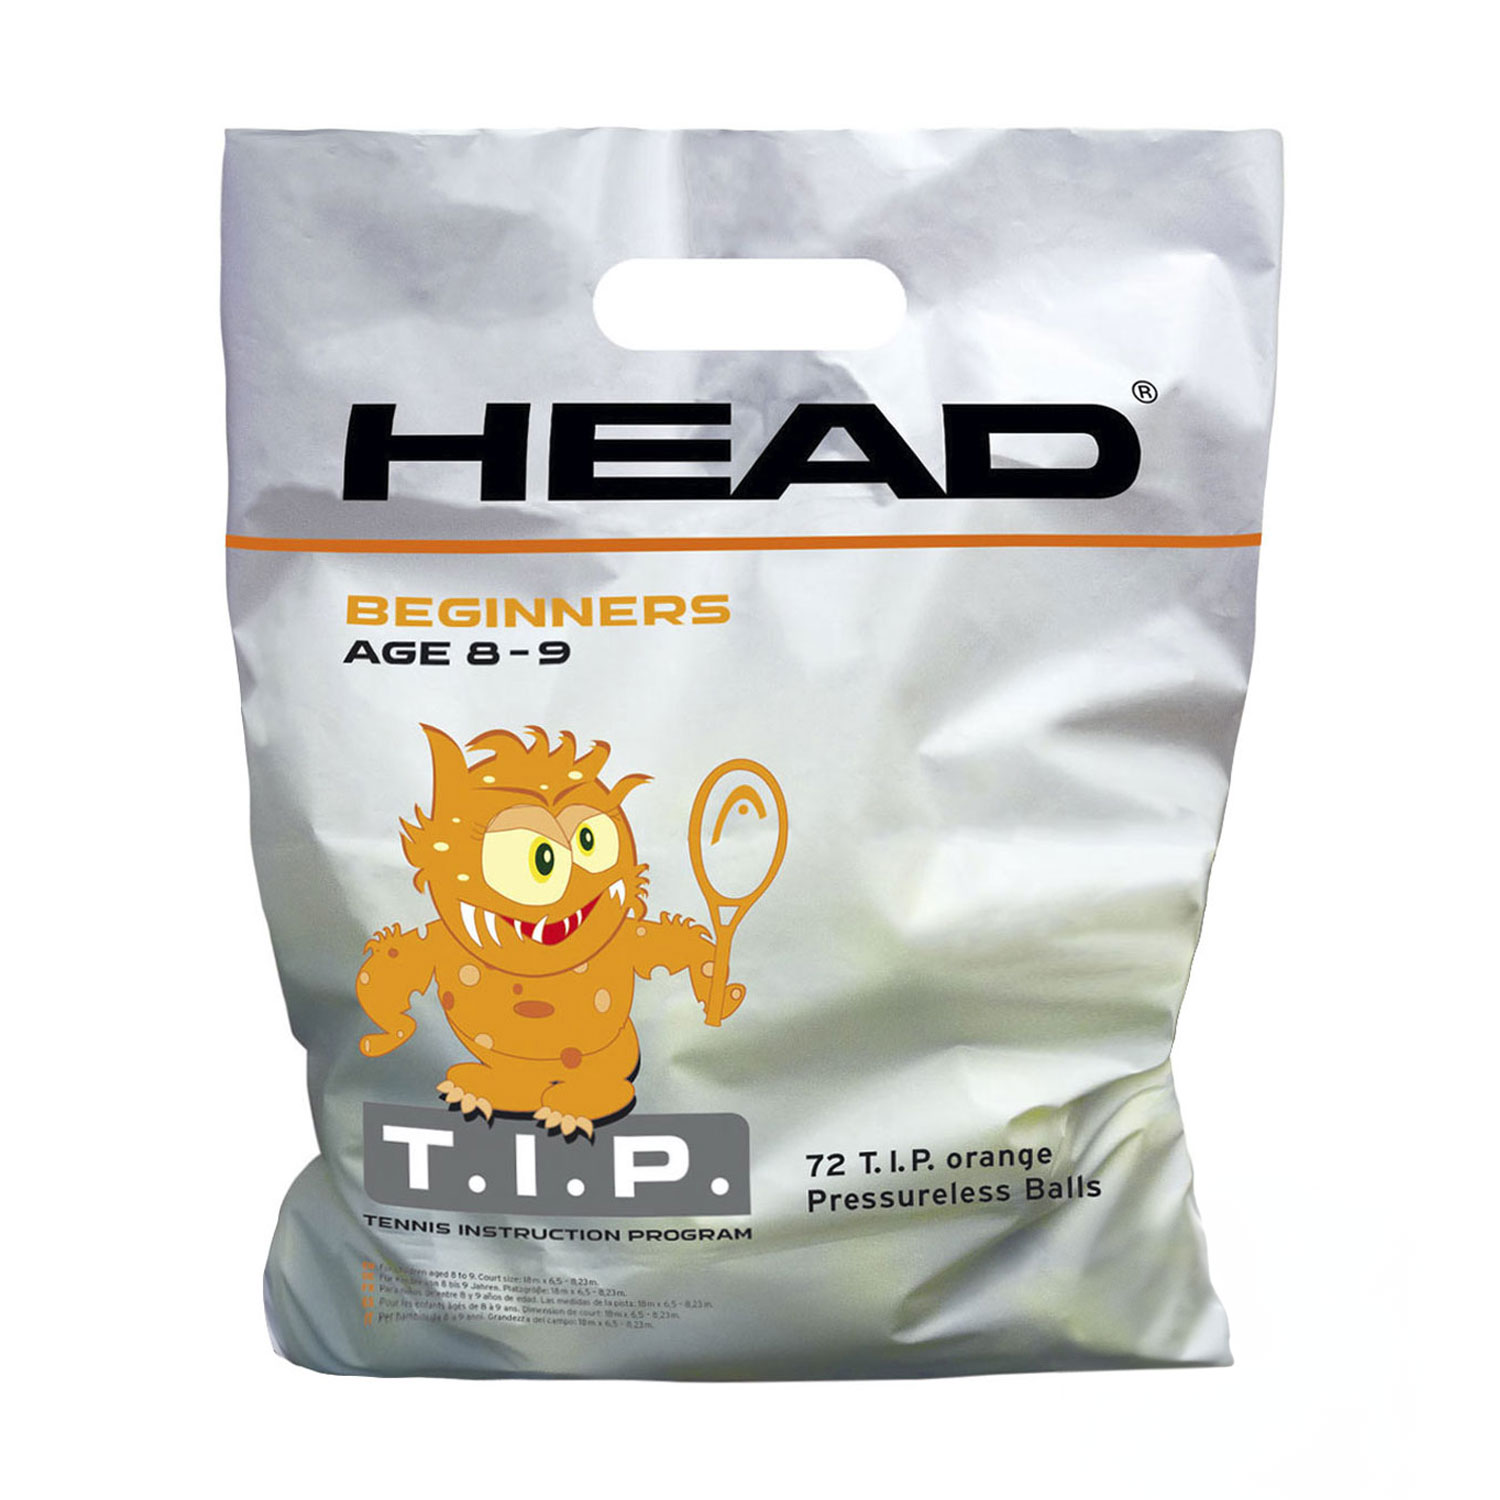 Head T.I.P Orange - 72 Balls Pack